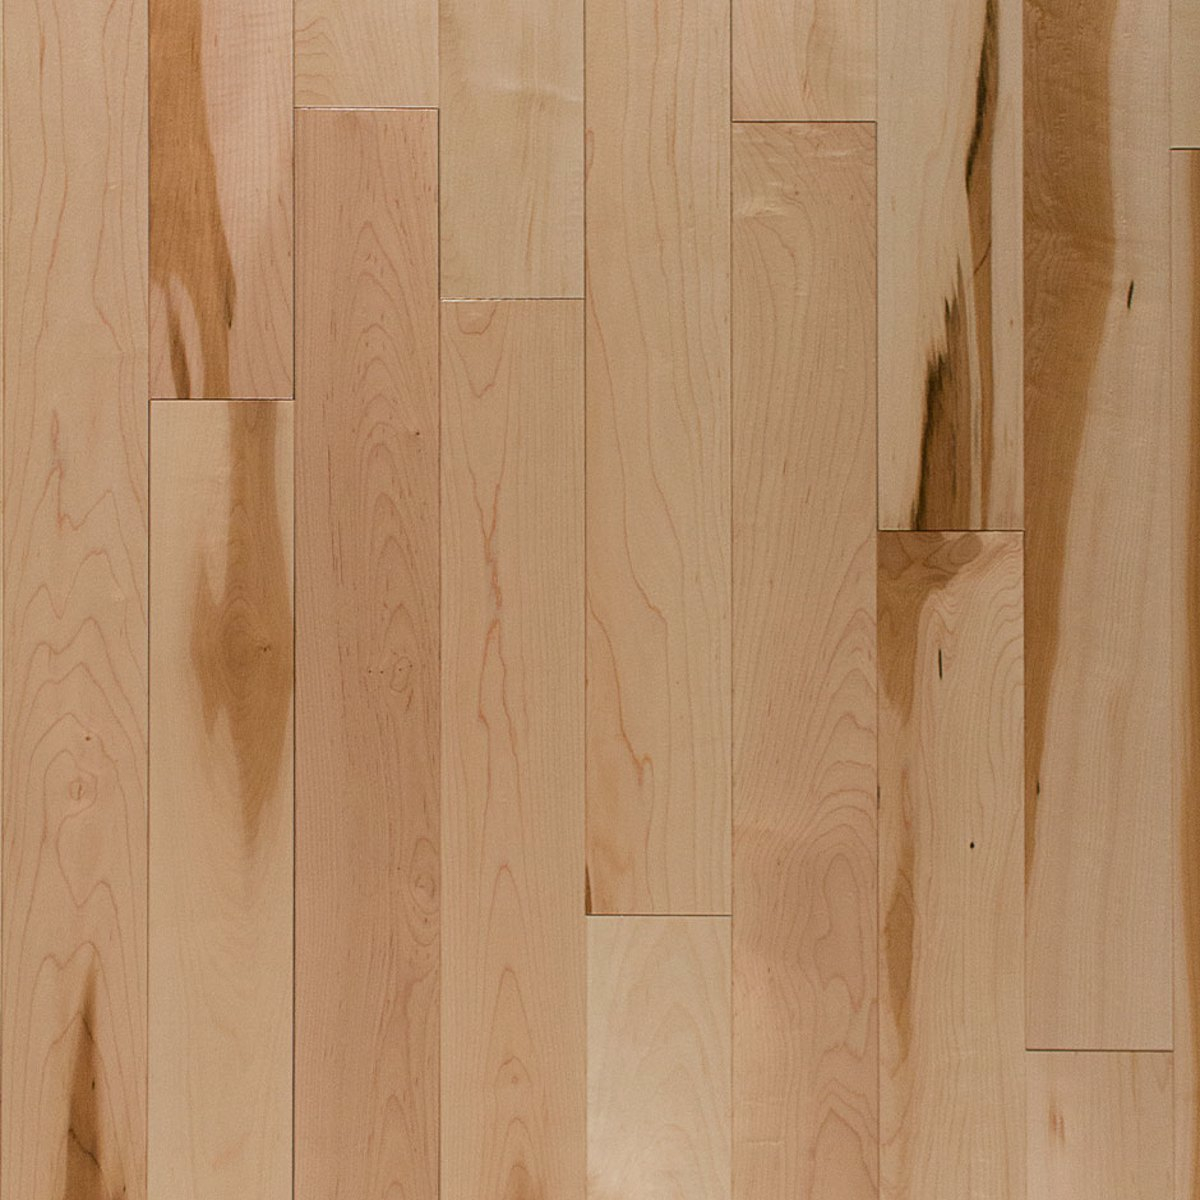 Canadian Hard Maple Wickha Barewood 3 1, 3 1 4 Maple Hardwood Flooring